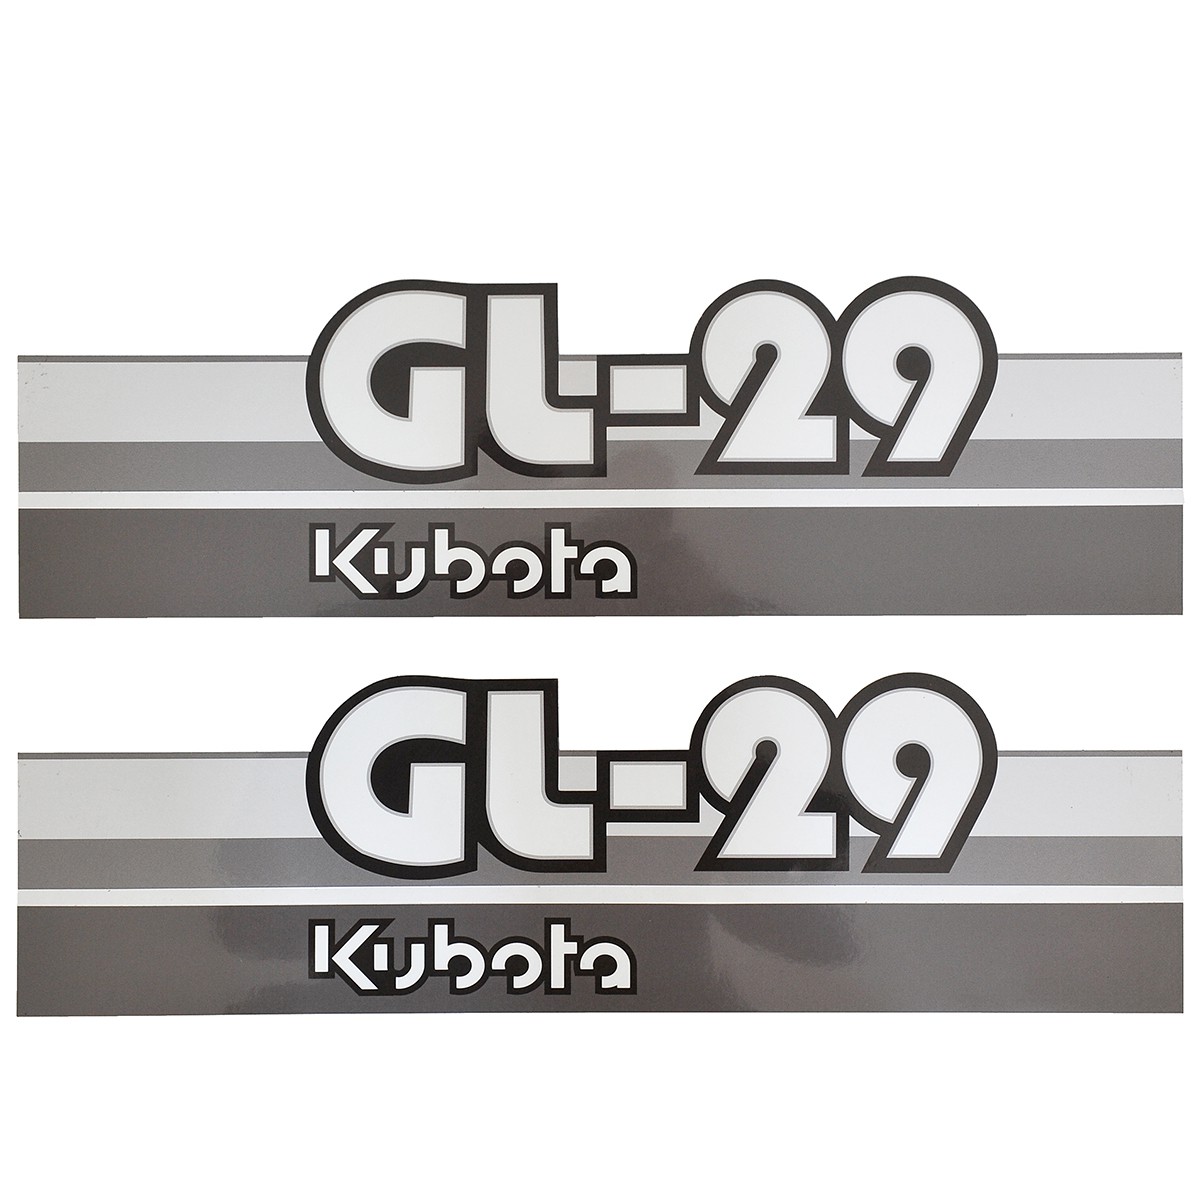 Nálepky Kubota GL29